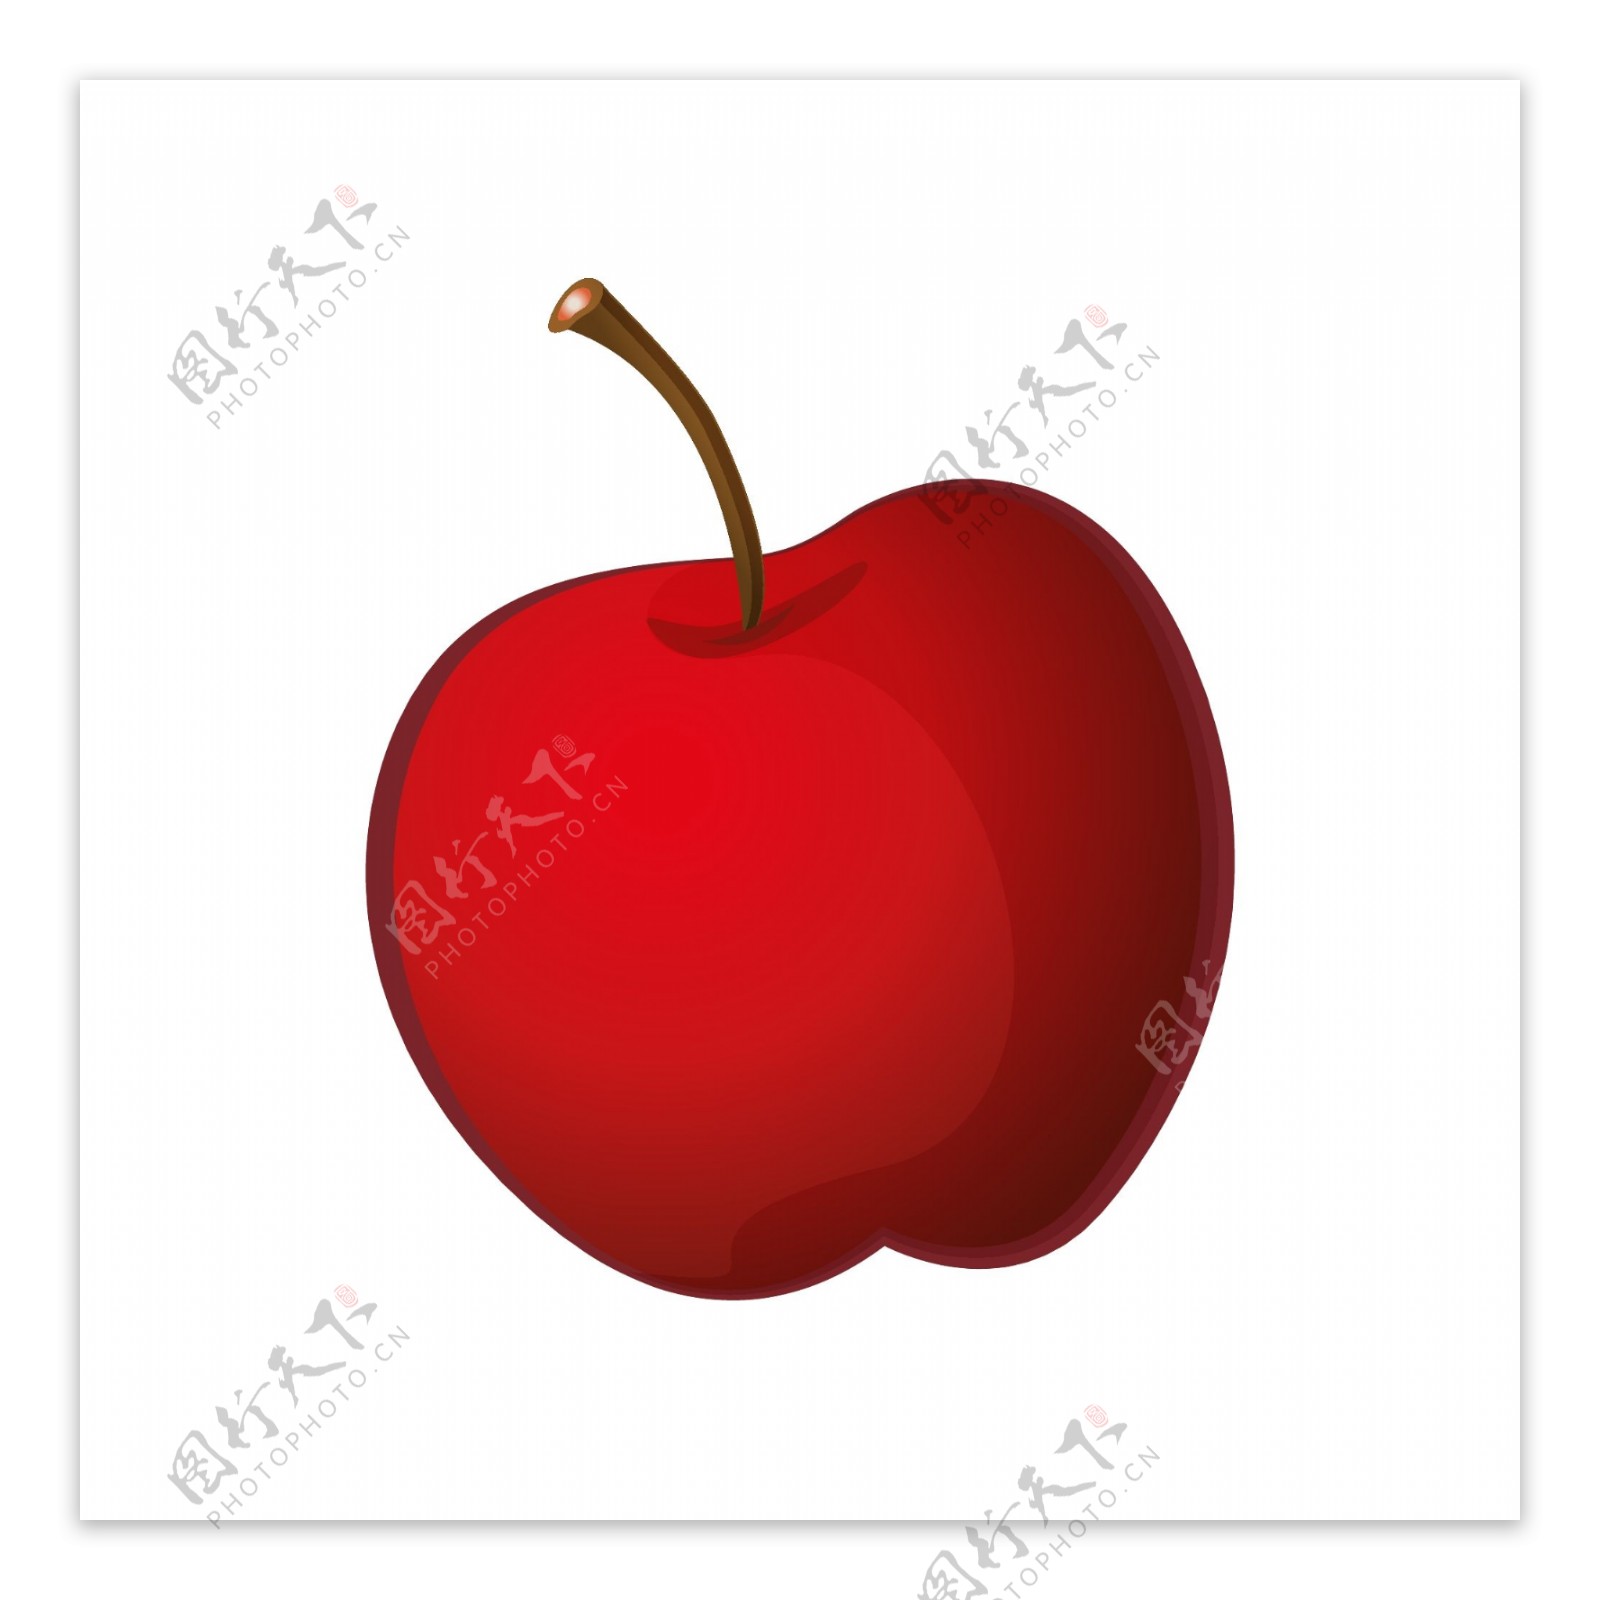 水果红苹果矢量元素卡通